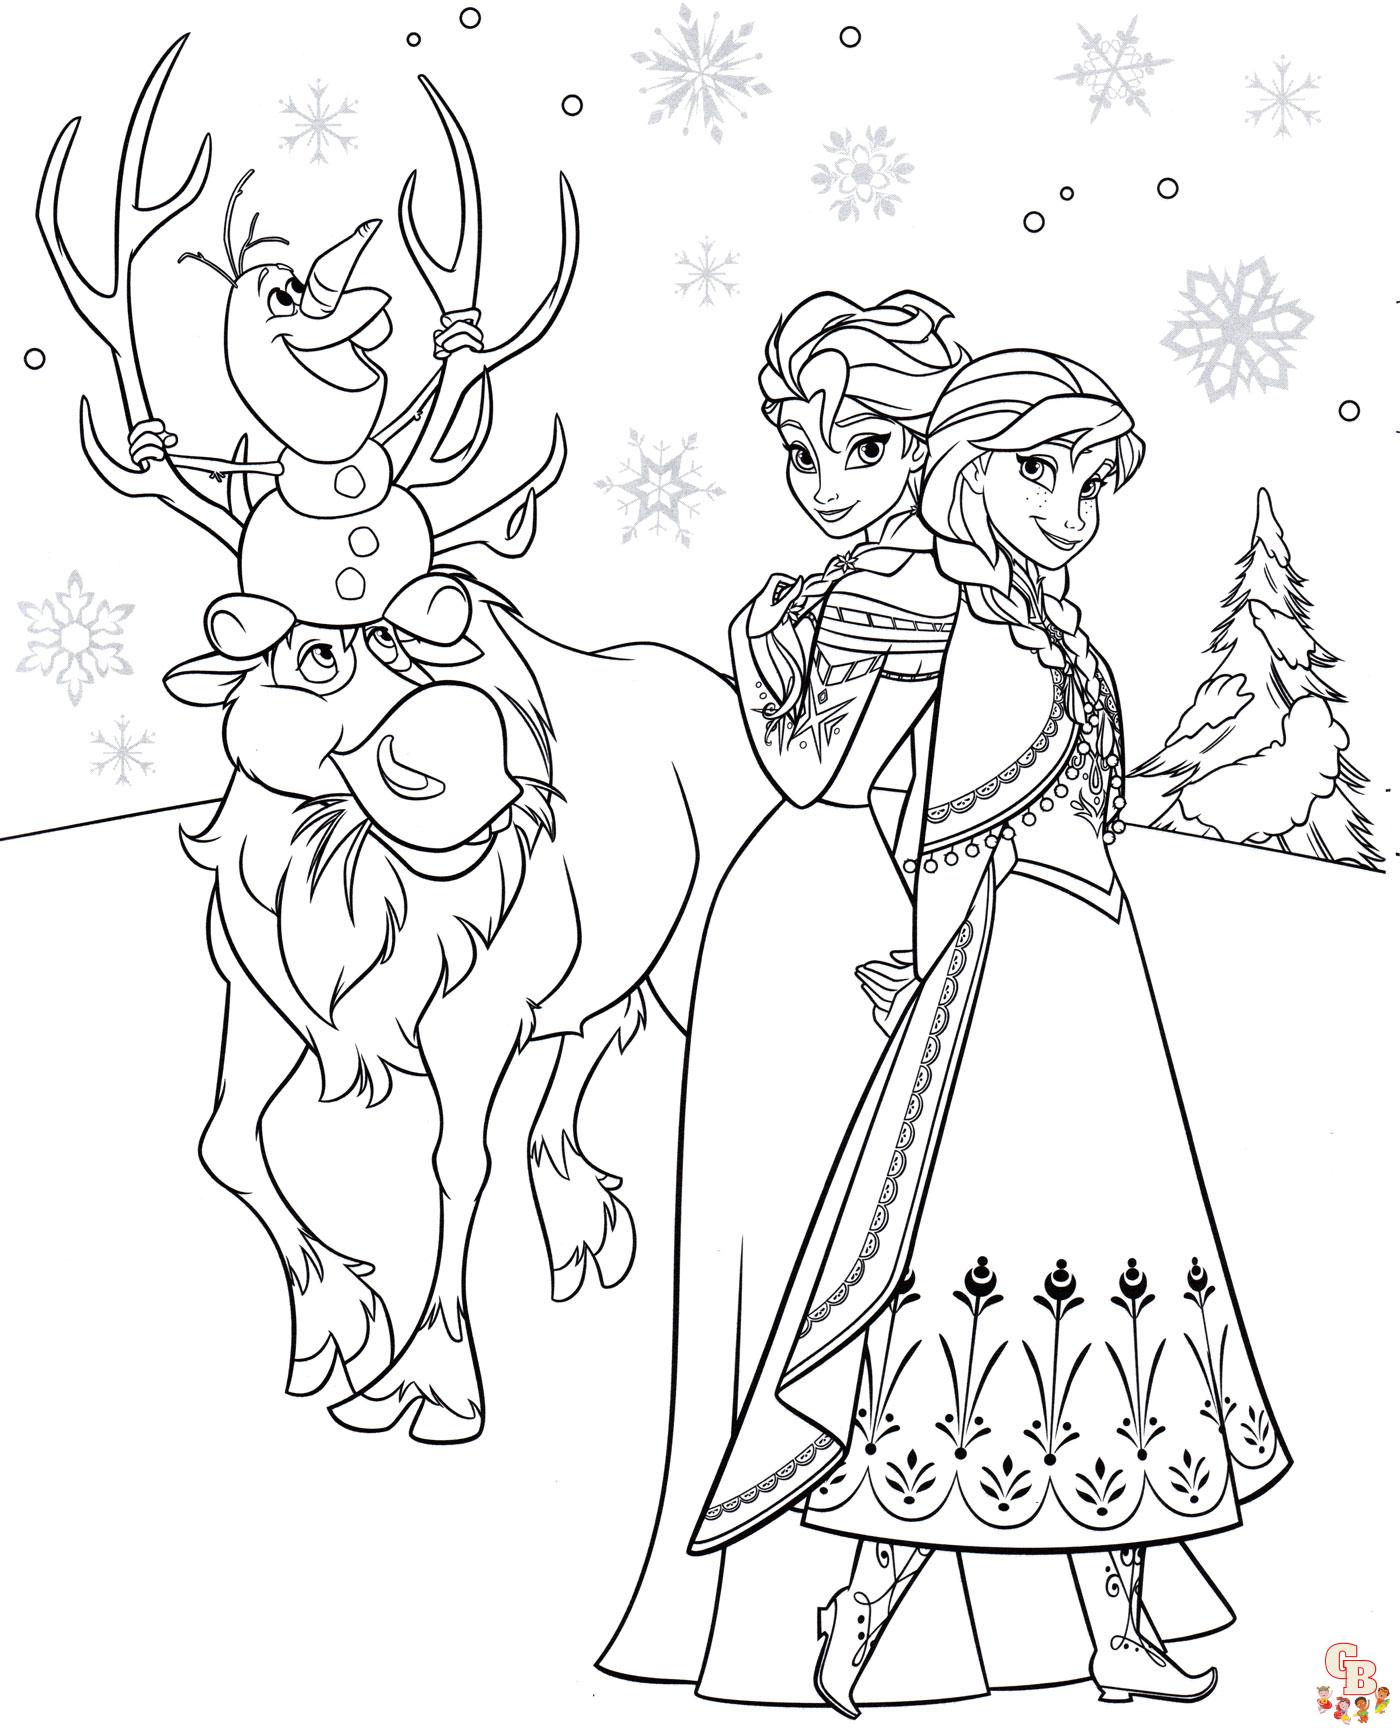 Frohe Weihnachten mit Elsa zum ausdrucken